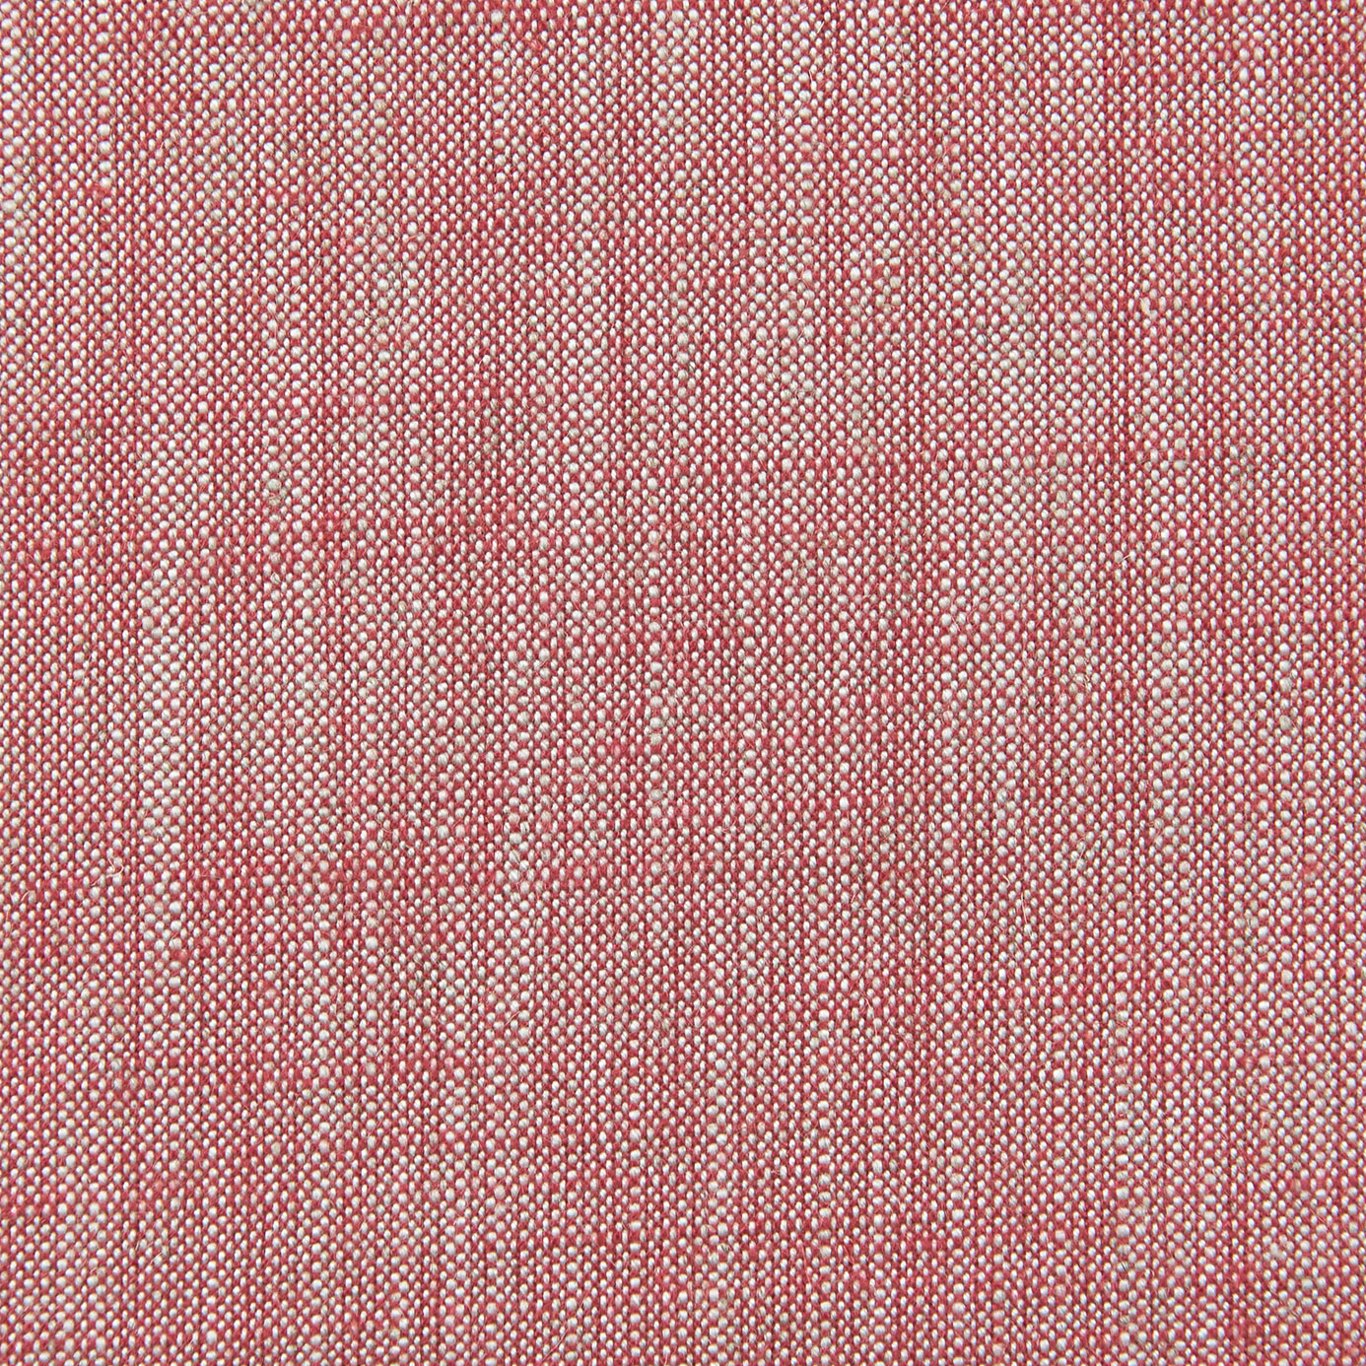 Biarritz Fabric by Clarke & Clarke - F0965/38 - Raspberry